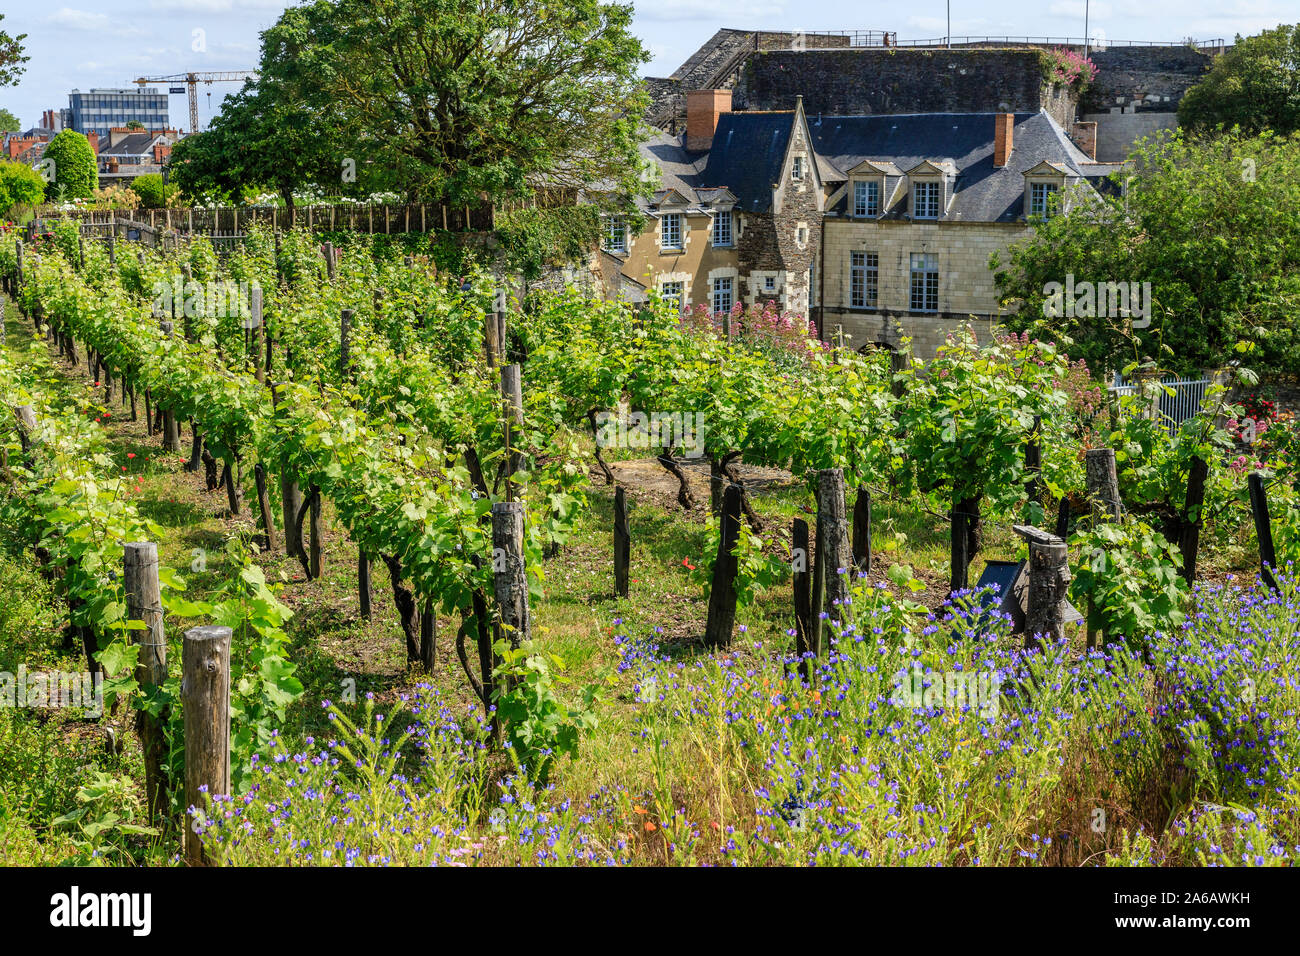 Francia, Maine et Loire, Angers, Chateau d'Angers, castello di Angers, appendere il giardino vitato, bianco Chenin varietà di uva, filari di viti Foto Stock